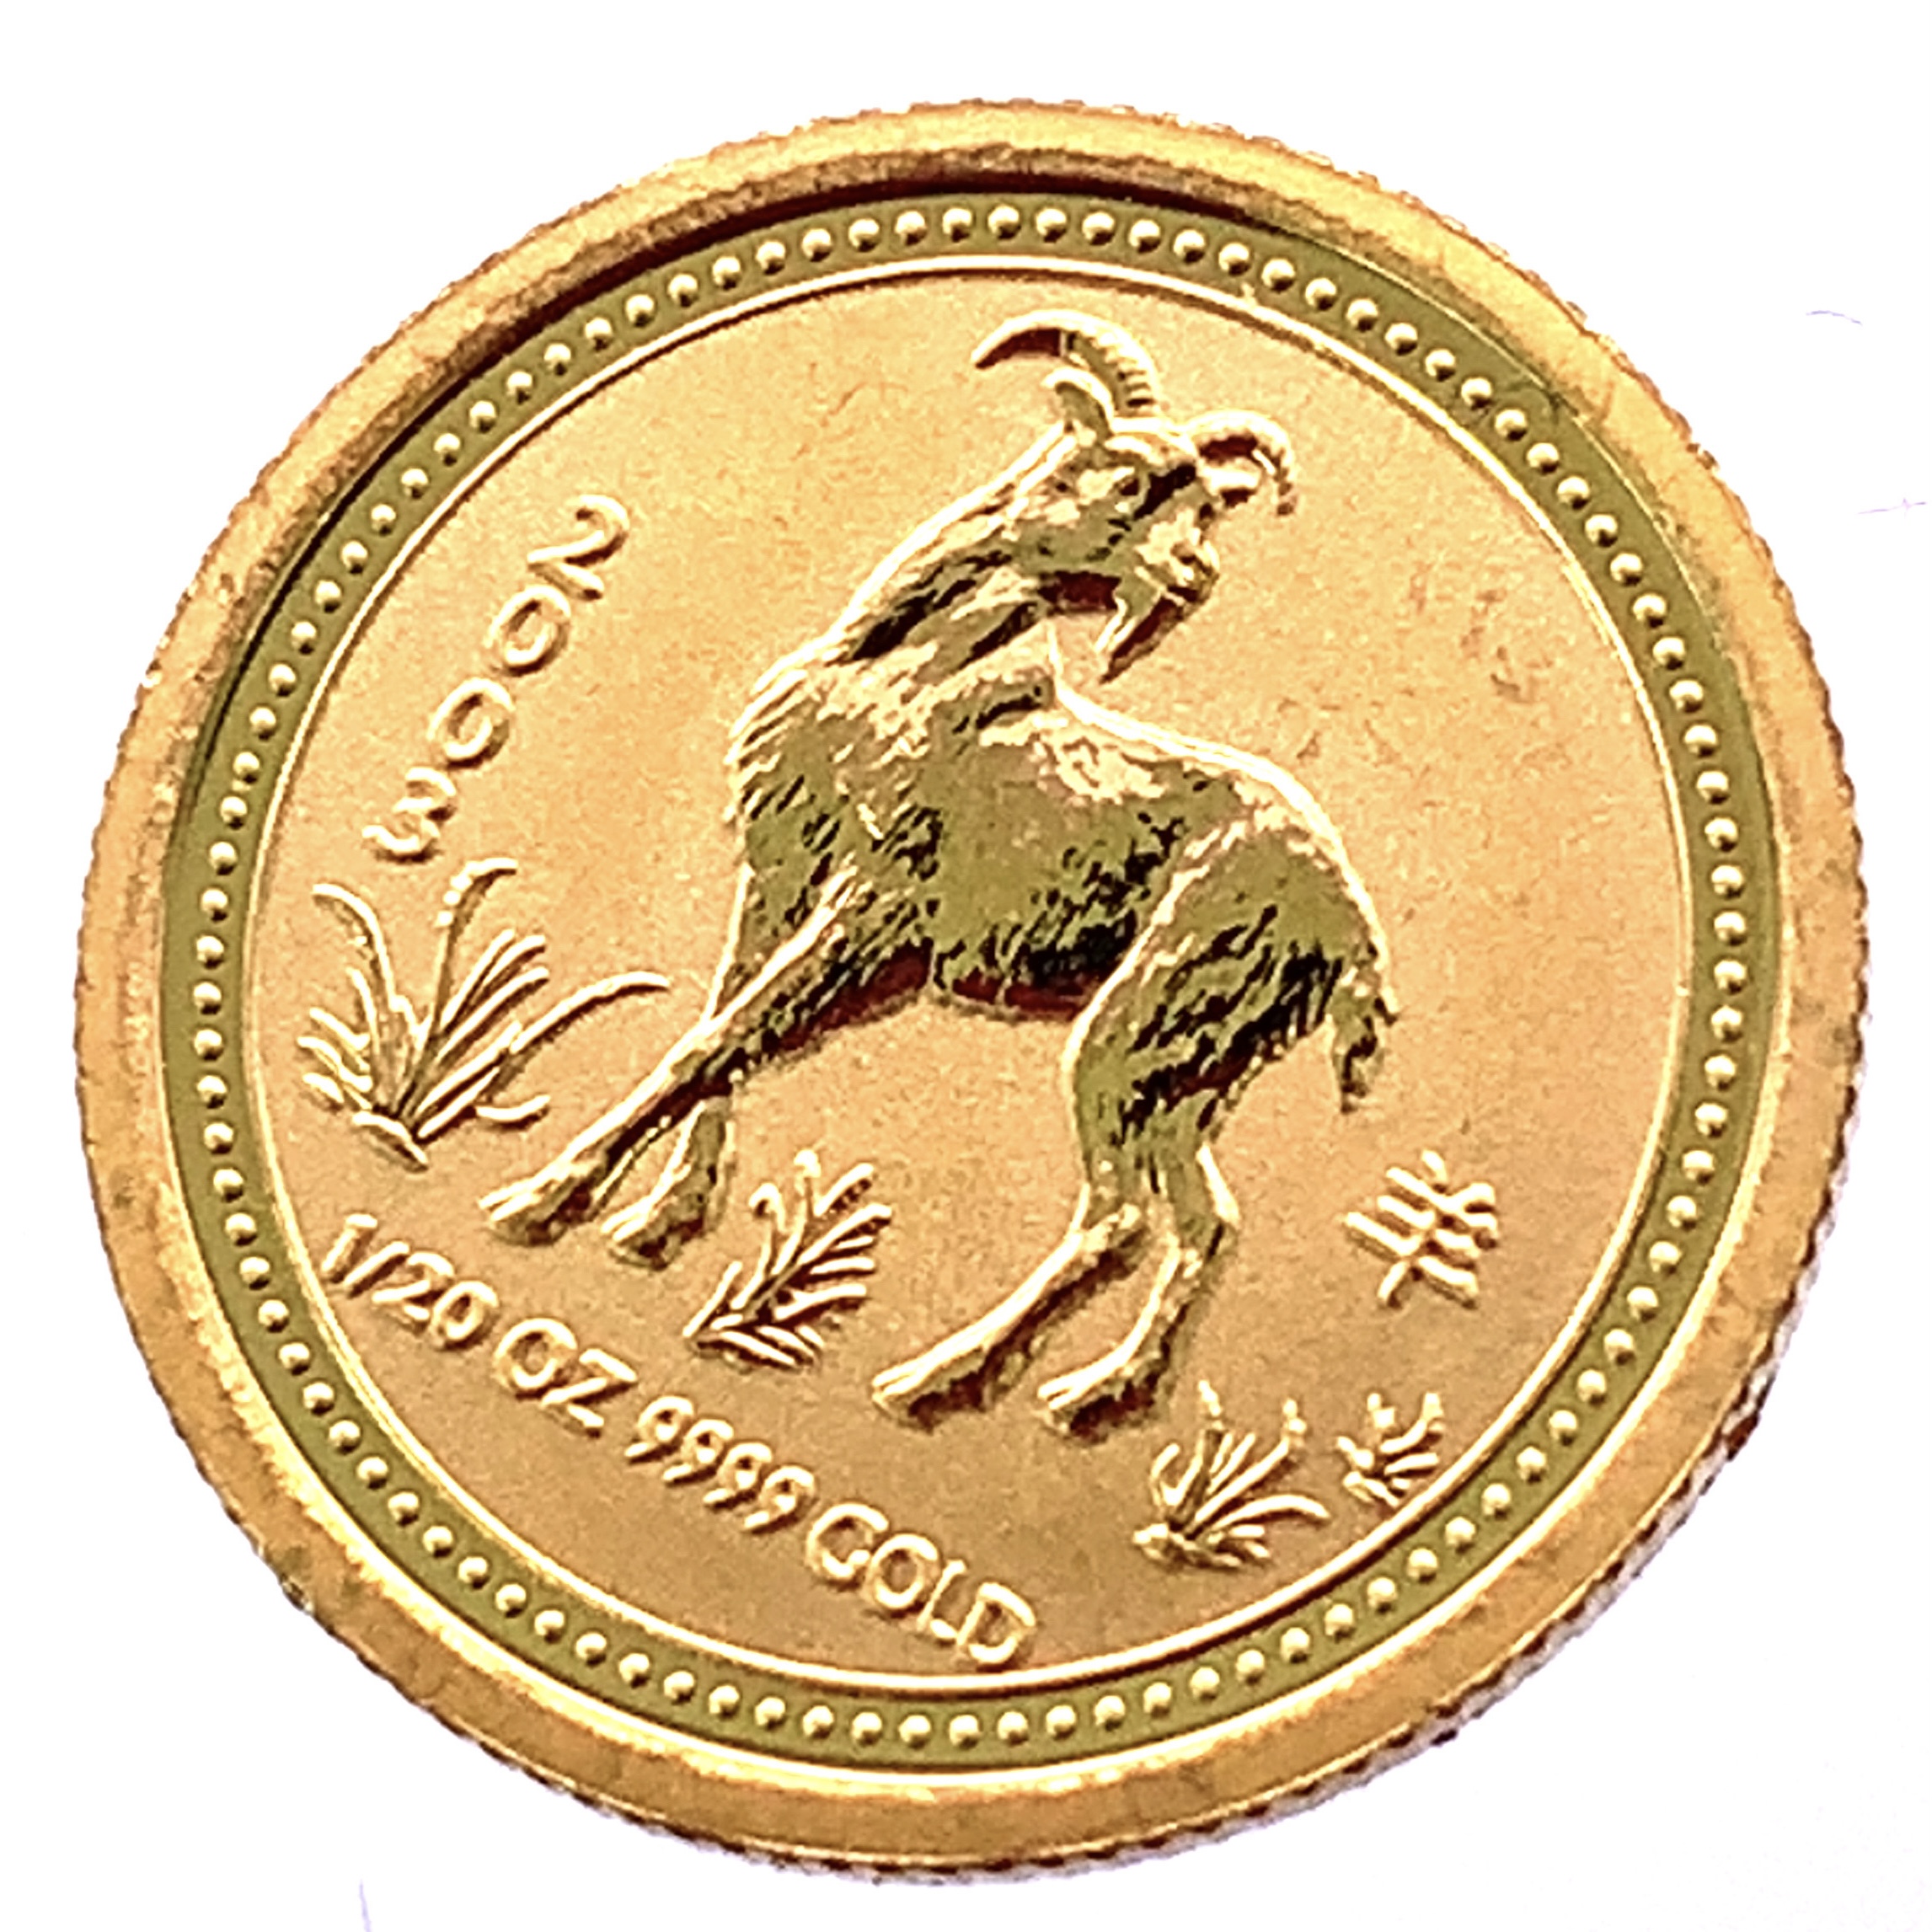 干支 金貨 羊 オーストラリア エリザベス女王 2003年 K24 純金 1.5g コイン 1/20オンス イエローゴールド コレクション Gold  | 39宝飾販売店